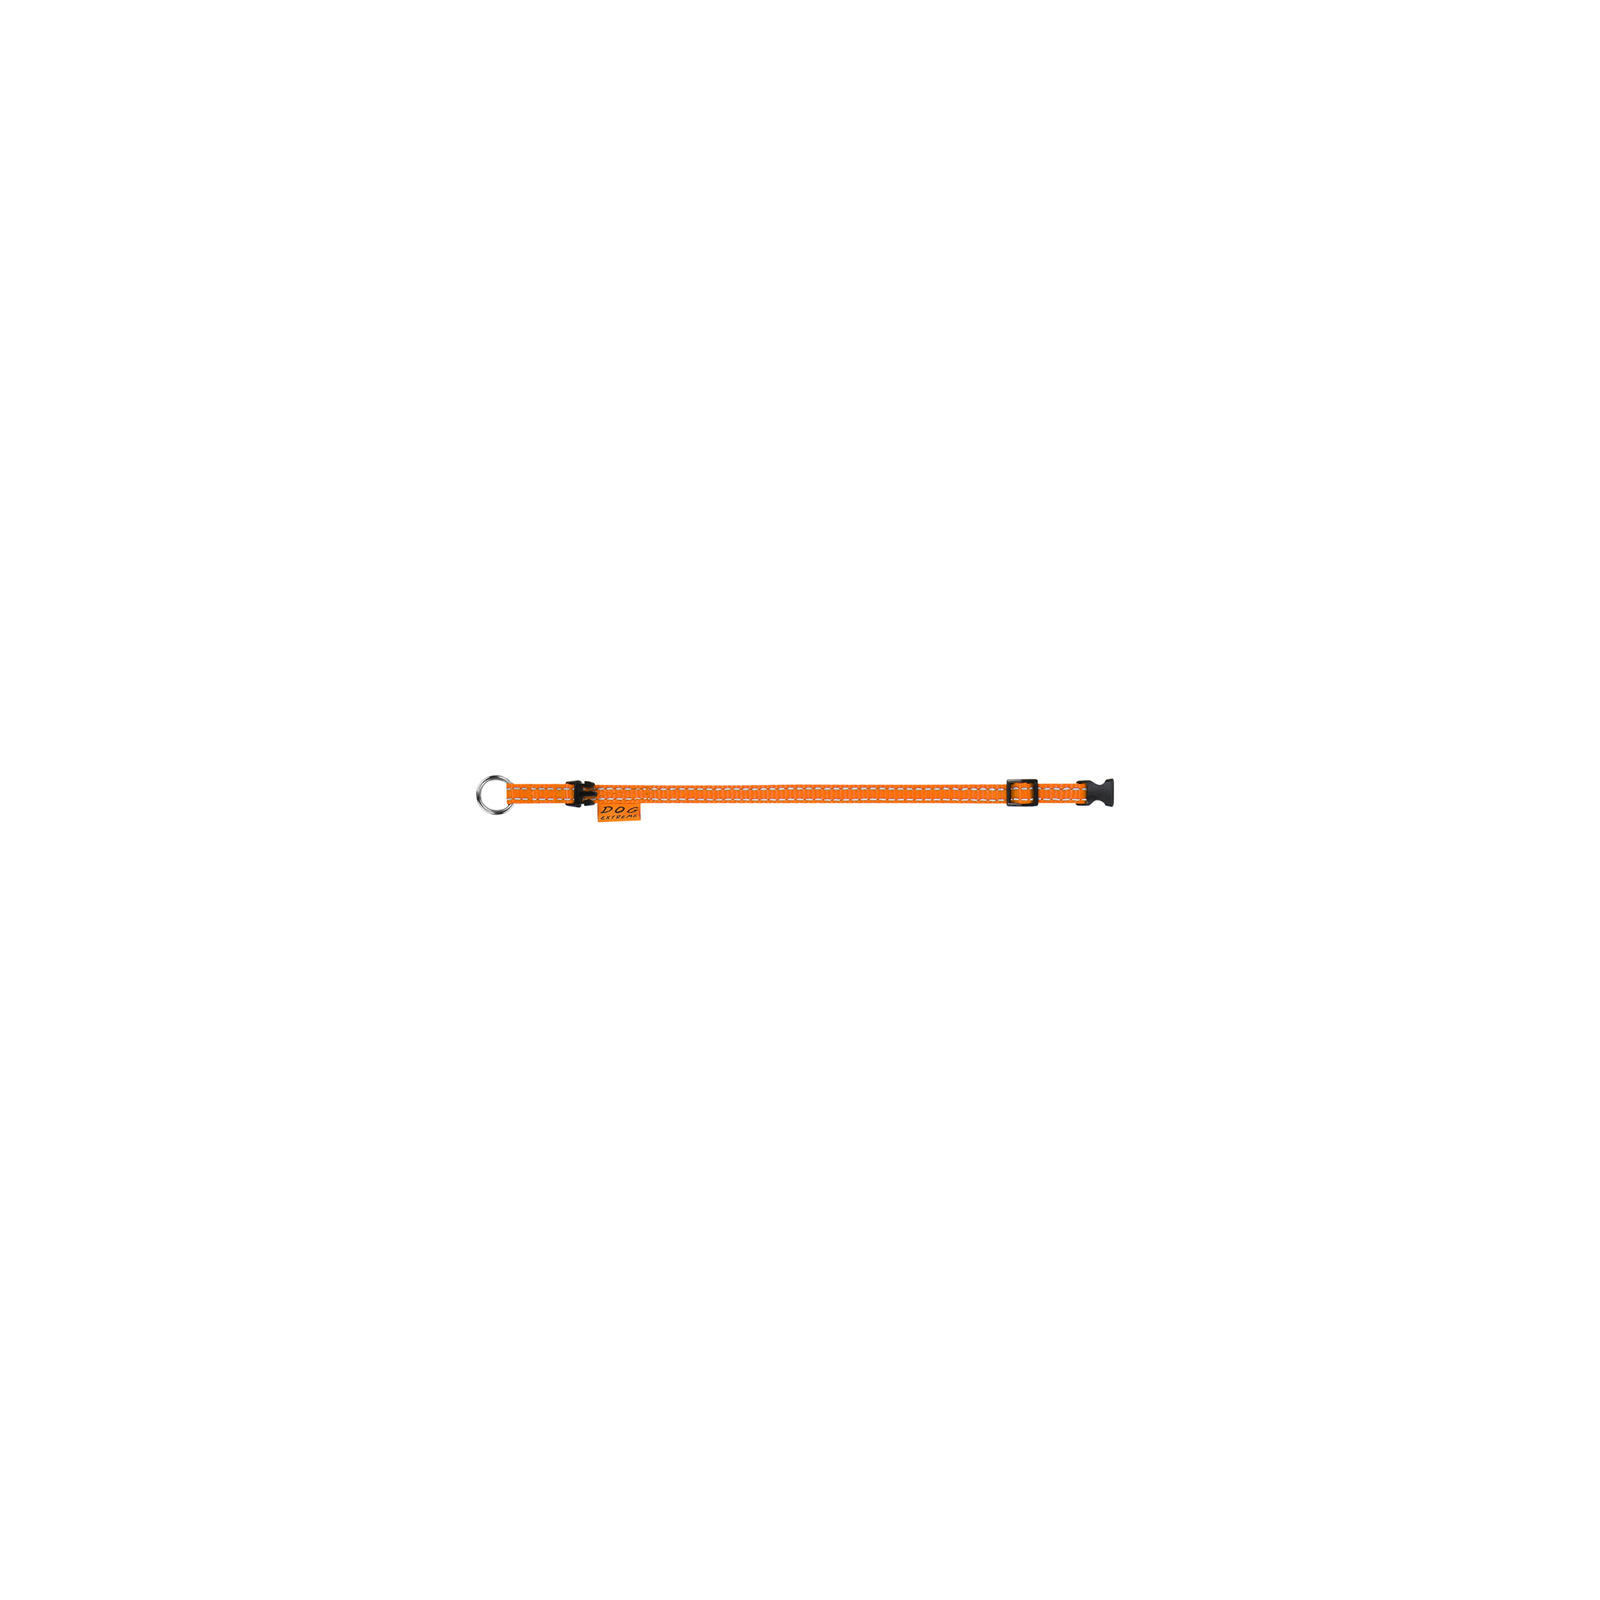 Ошейник для животных Dog Extreme из нейлона регулируемый Ш 20 мм Д 25-40 см оранжевый (01624) изображение 3